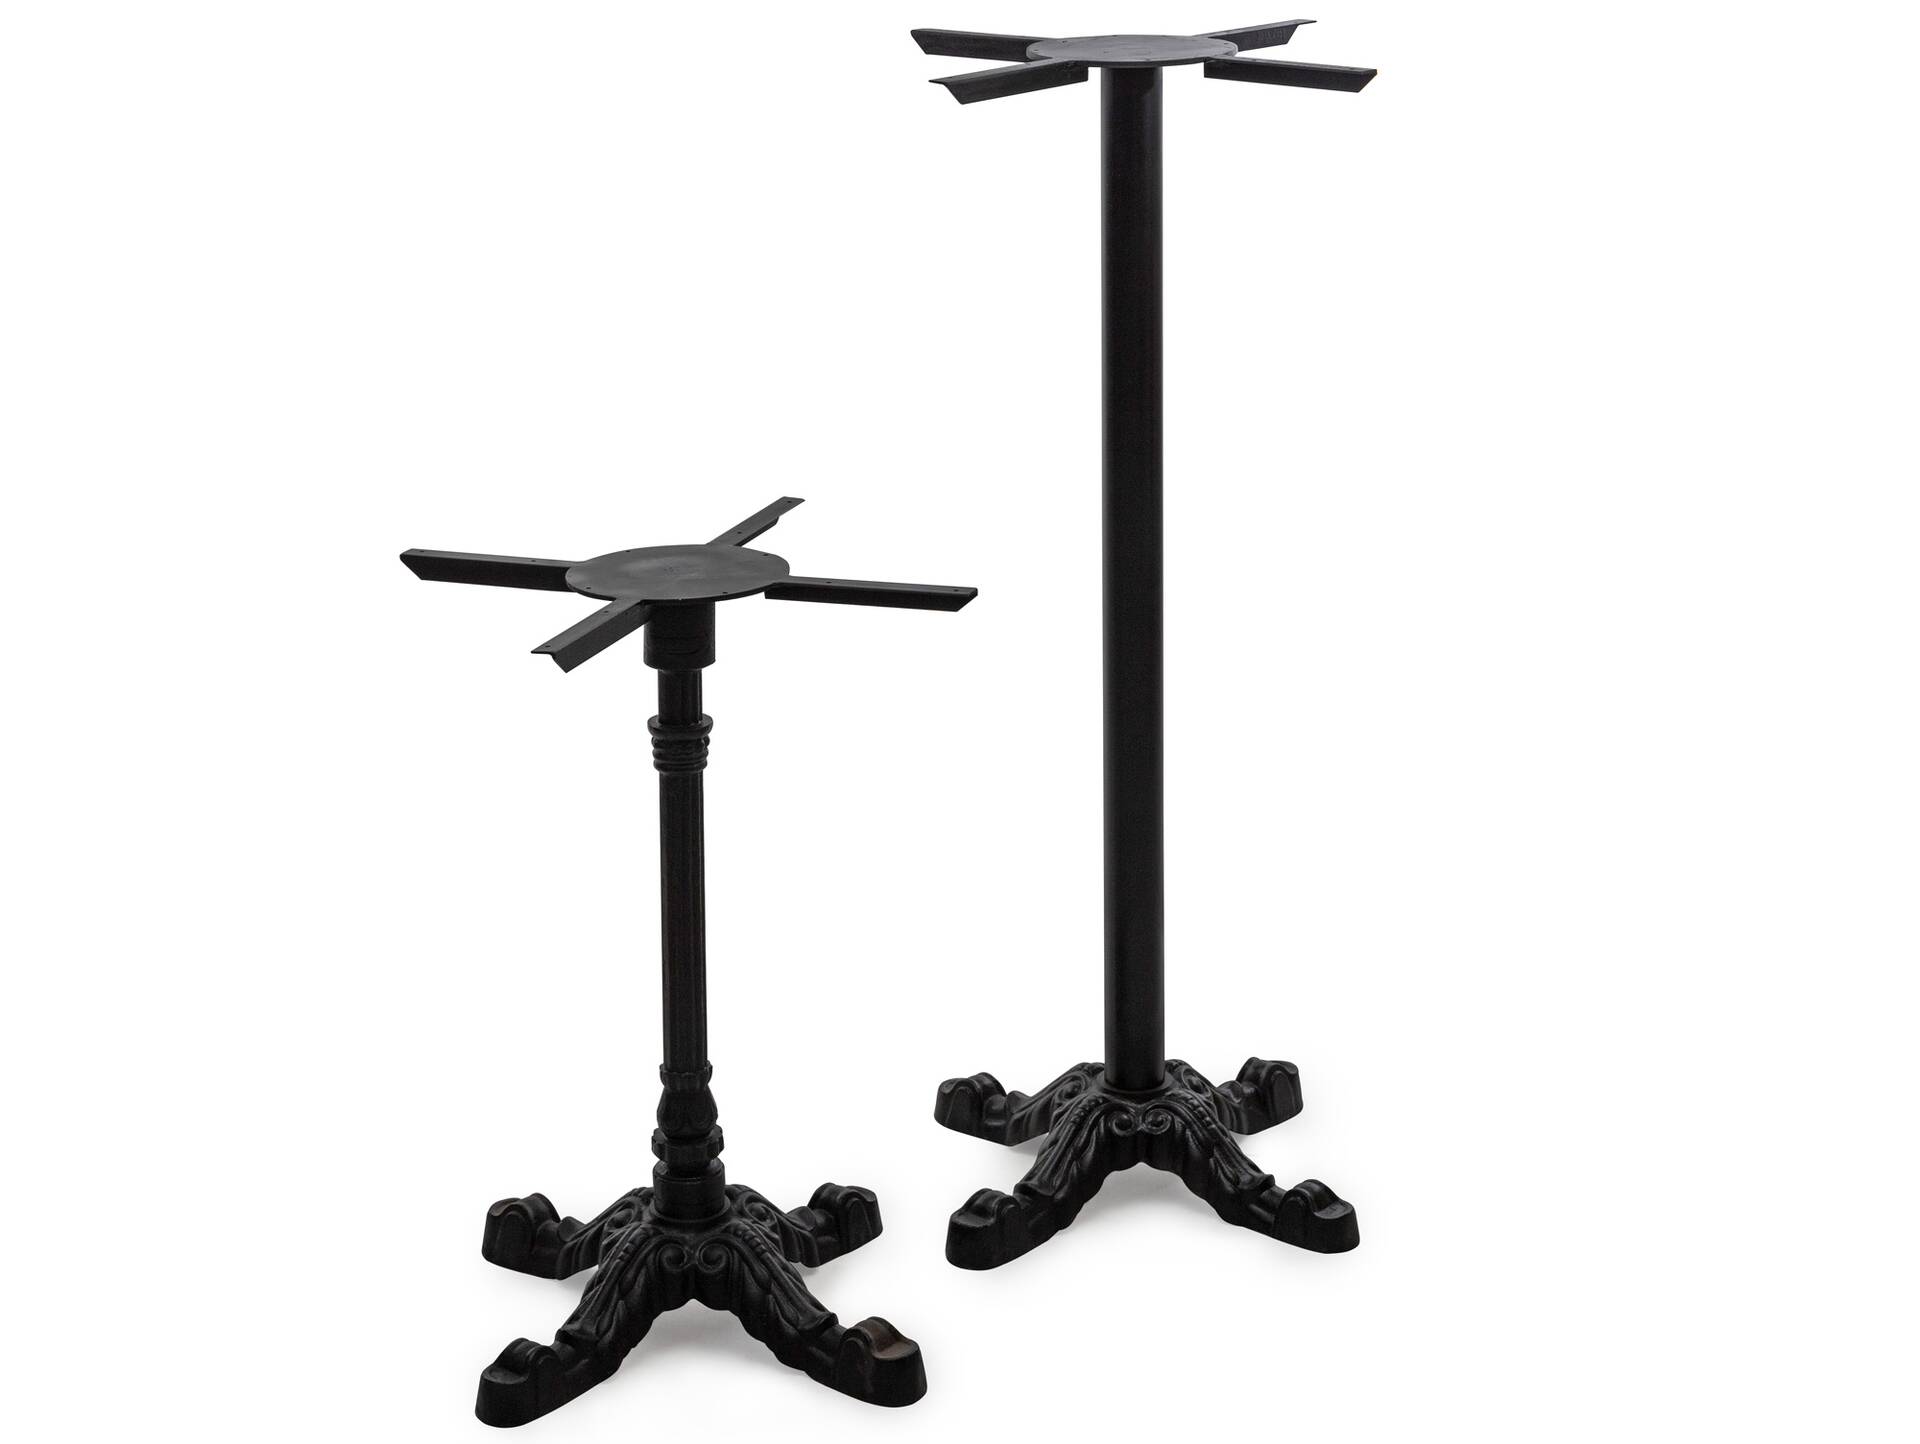 Tischgestell für Bartisch, Material Metall, schwarz lackiert, Höhe: 118 cm 